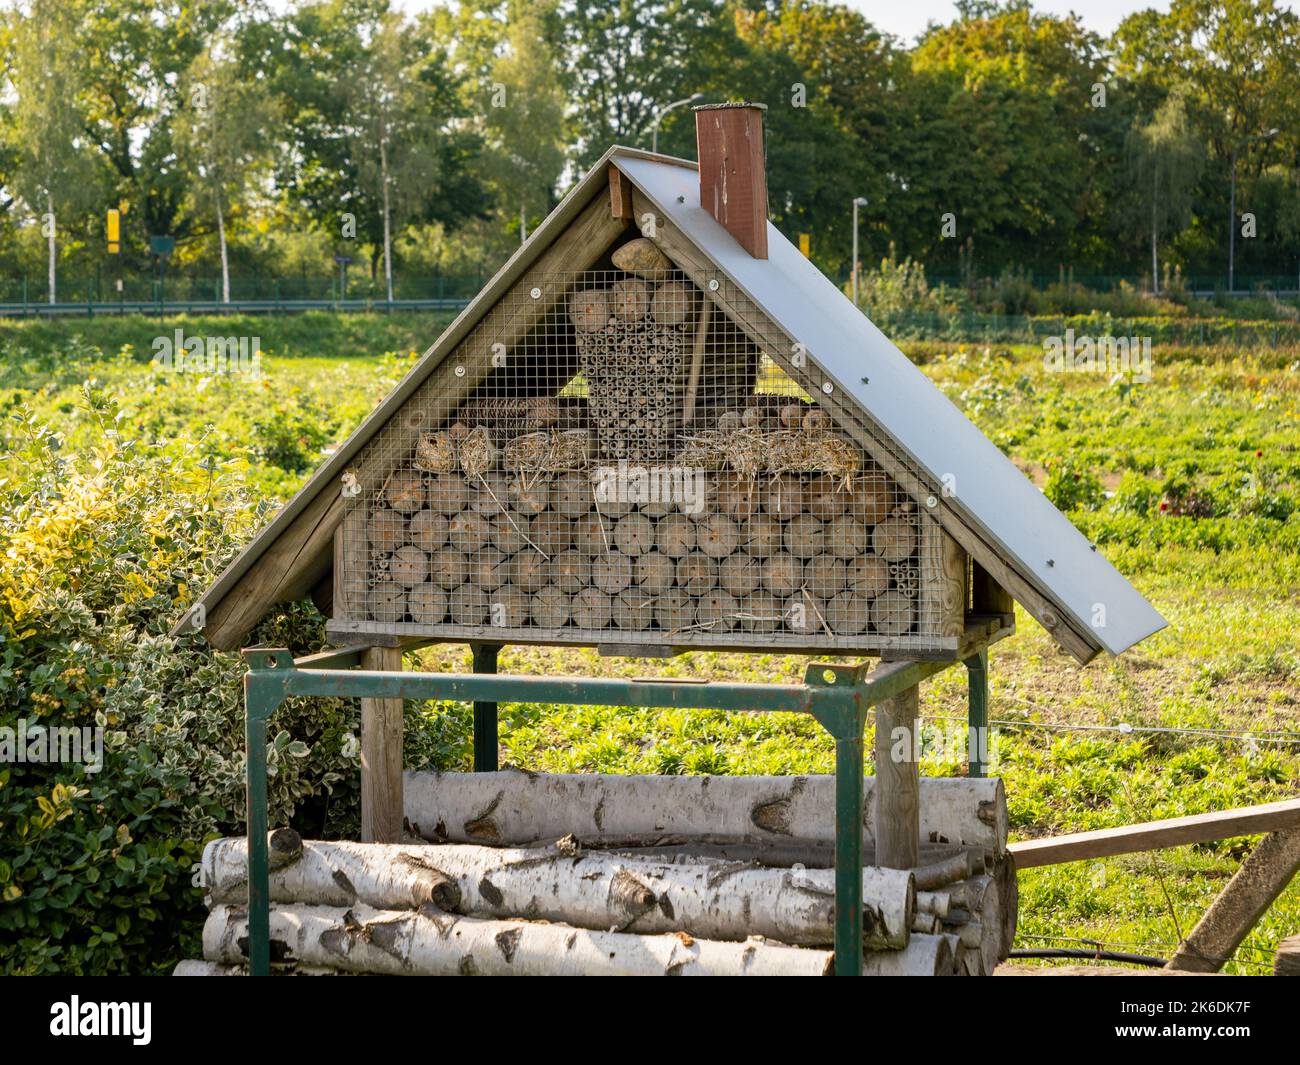 Insektenhotel in einer ländlichen Gegend. Insektenhaus als eine Struktur, um Schutz für kleine Insekten zu bieten. Verschiedene Formen mit verschiedenen Größen für Bienen und Wanzen Stockfoto